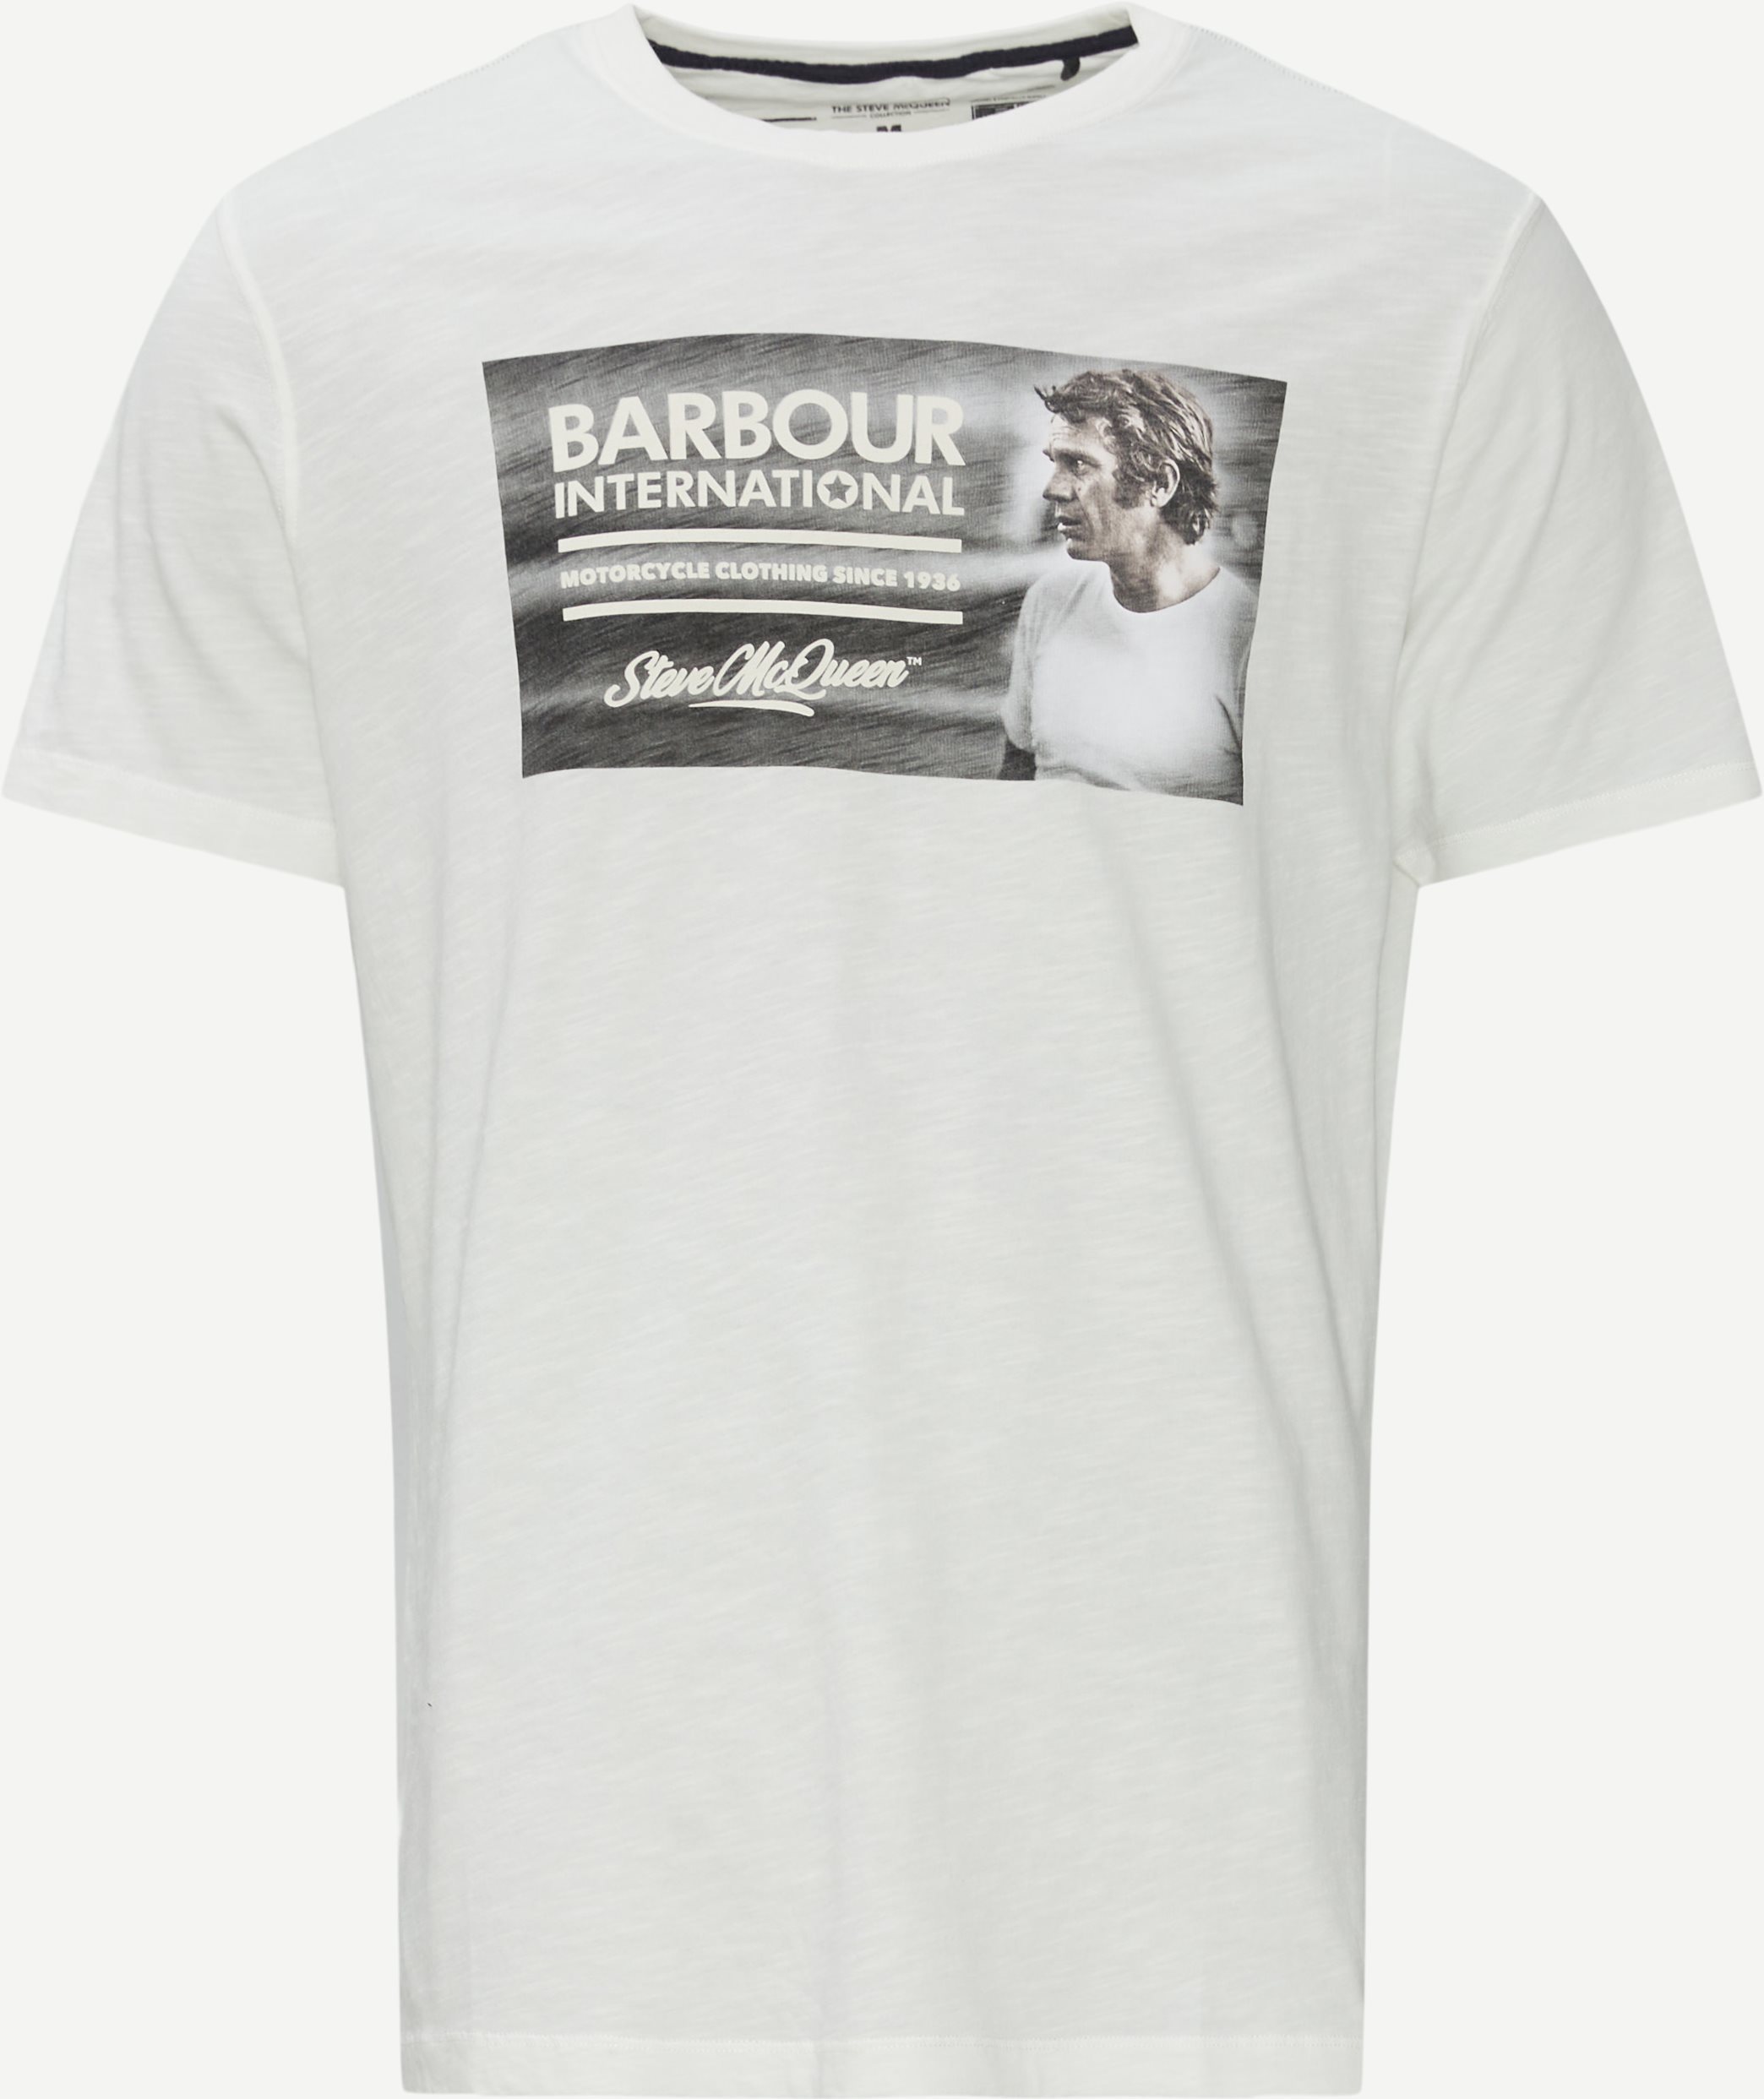 Steve McQueen Legend T-shirt - T-shirts - Regular fit - Hvid